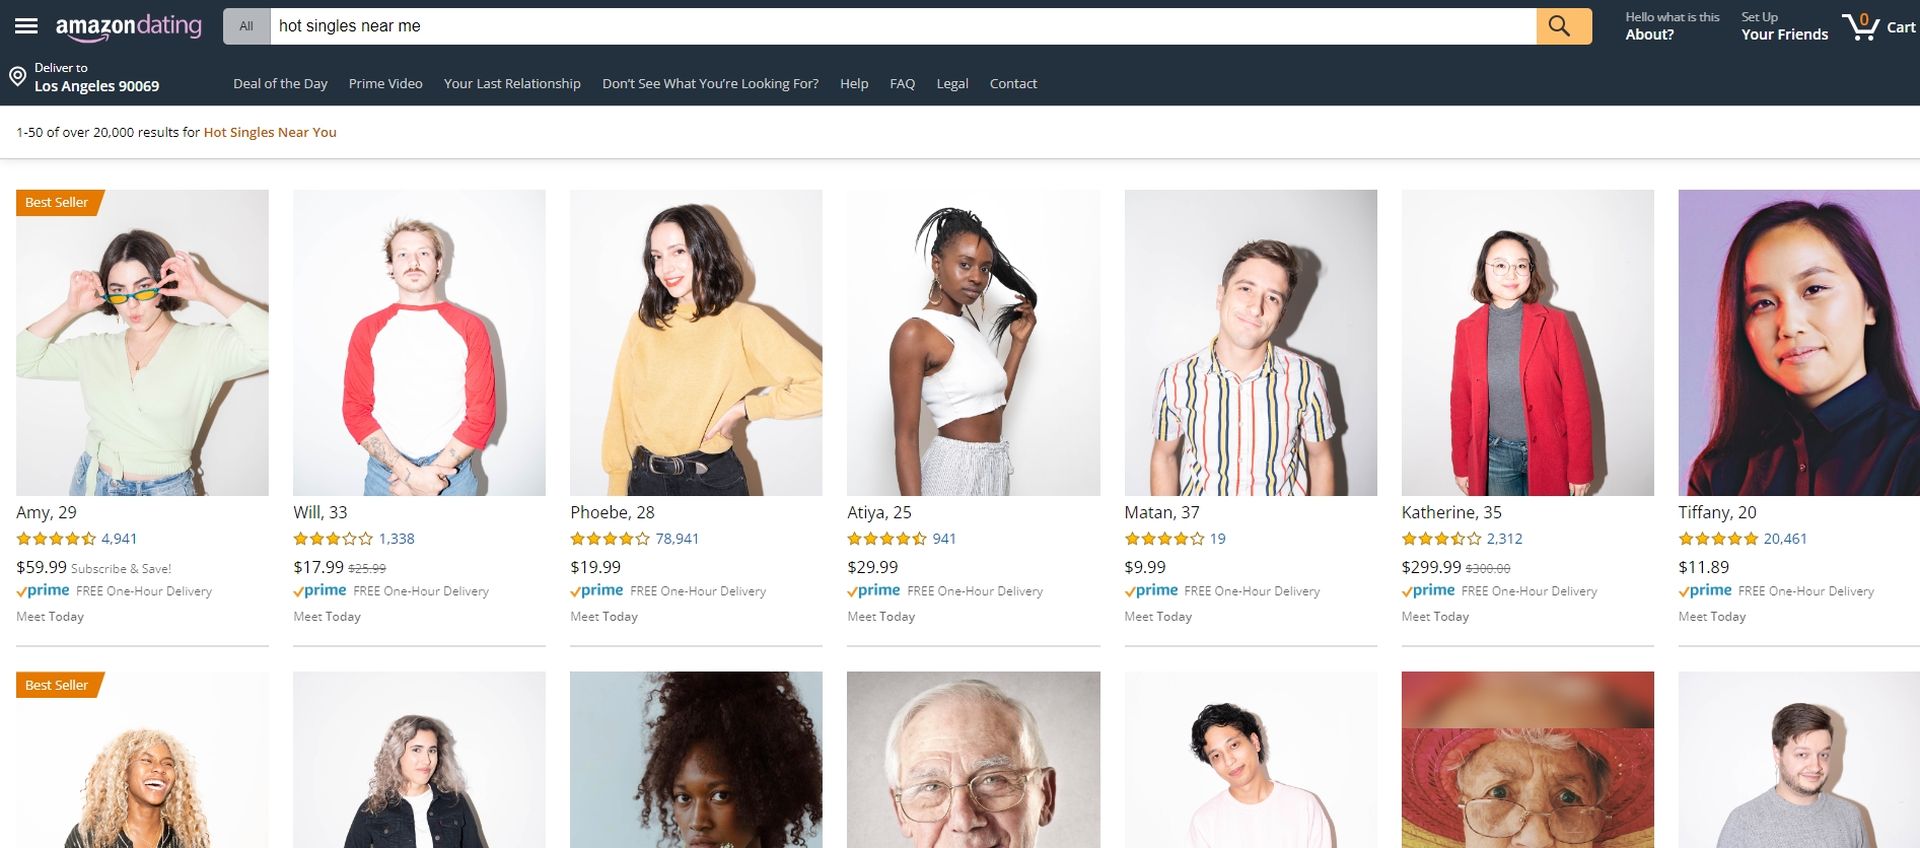 Denne Amazon datingside lader dig bestille "menneske" online